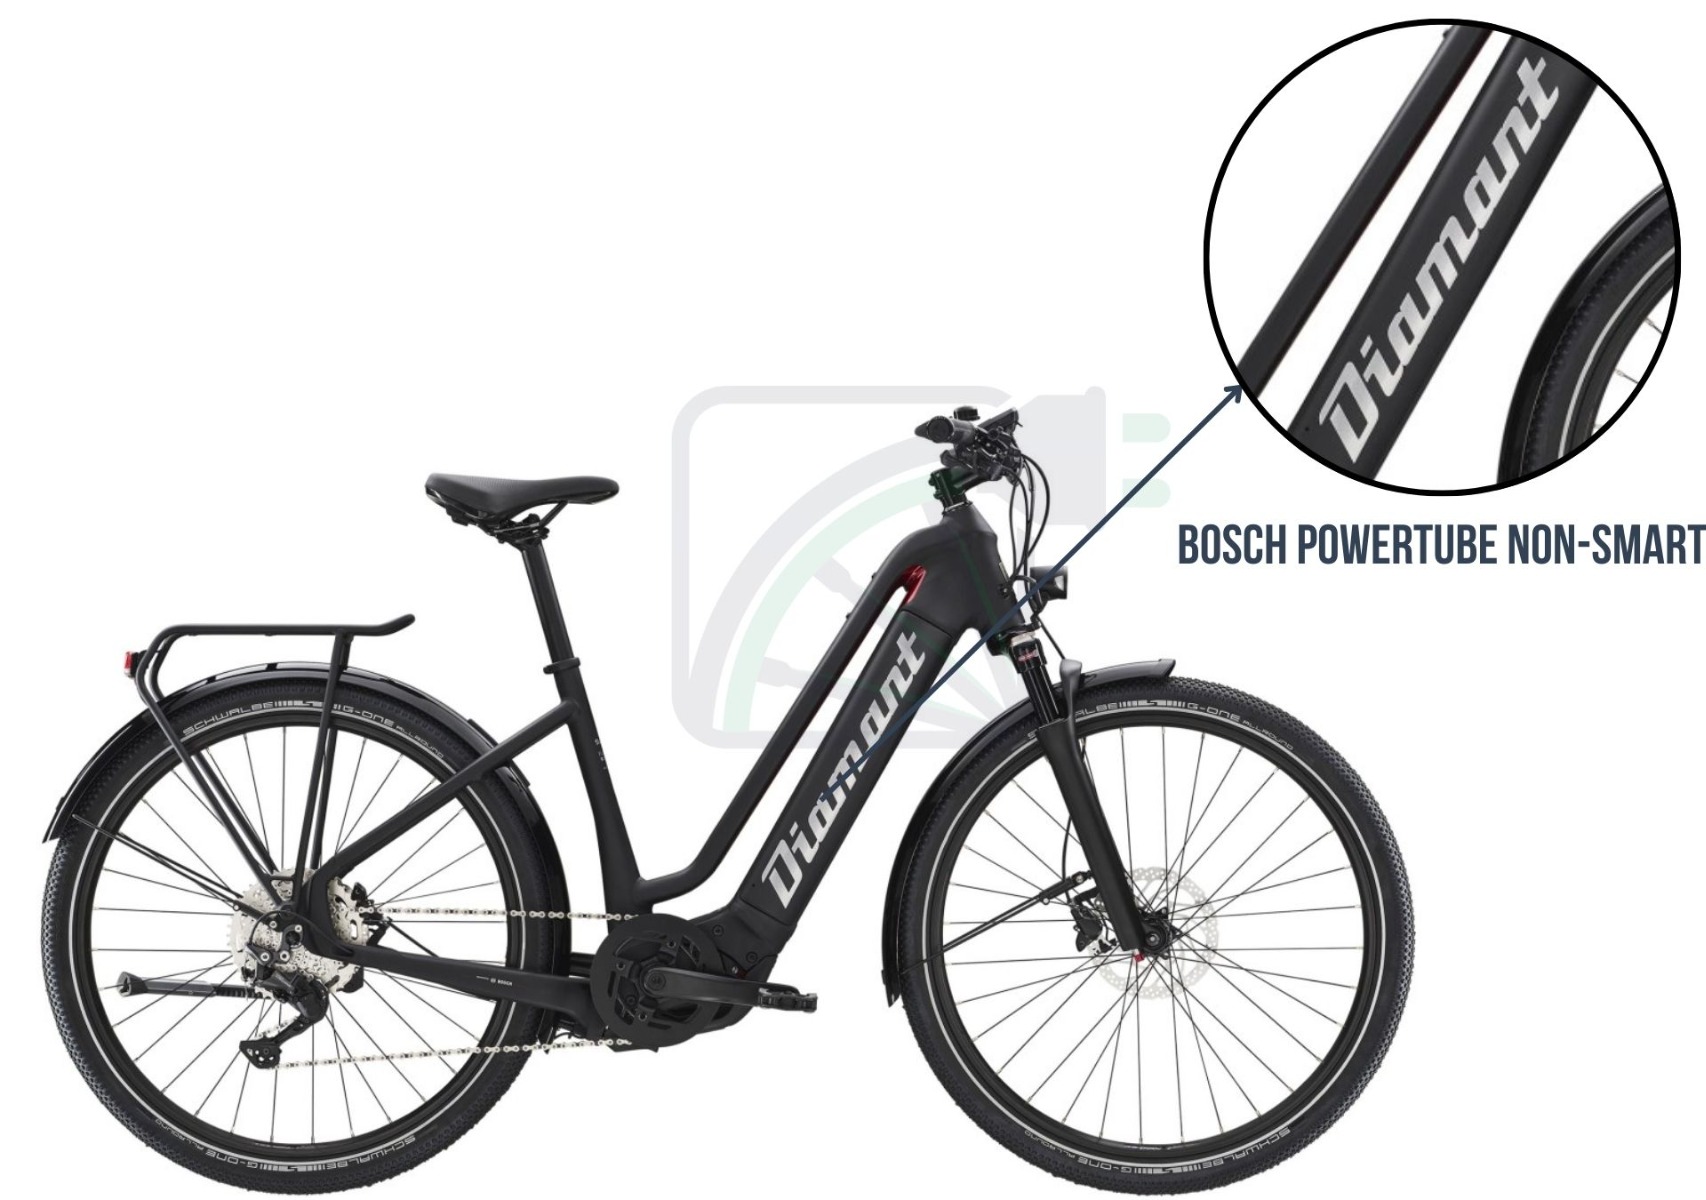 Billede af en elektrisk cykel, hvor det fremhæves, hvilket cykelbatteri der er i denne cykel. I dette tilfælde er det Bosch PowerTube.